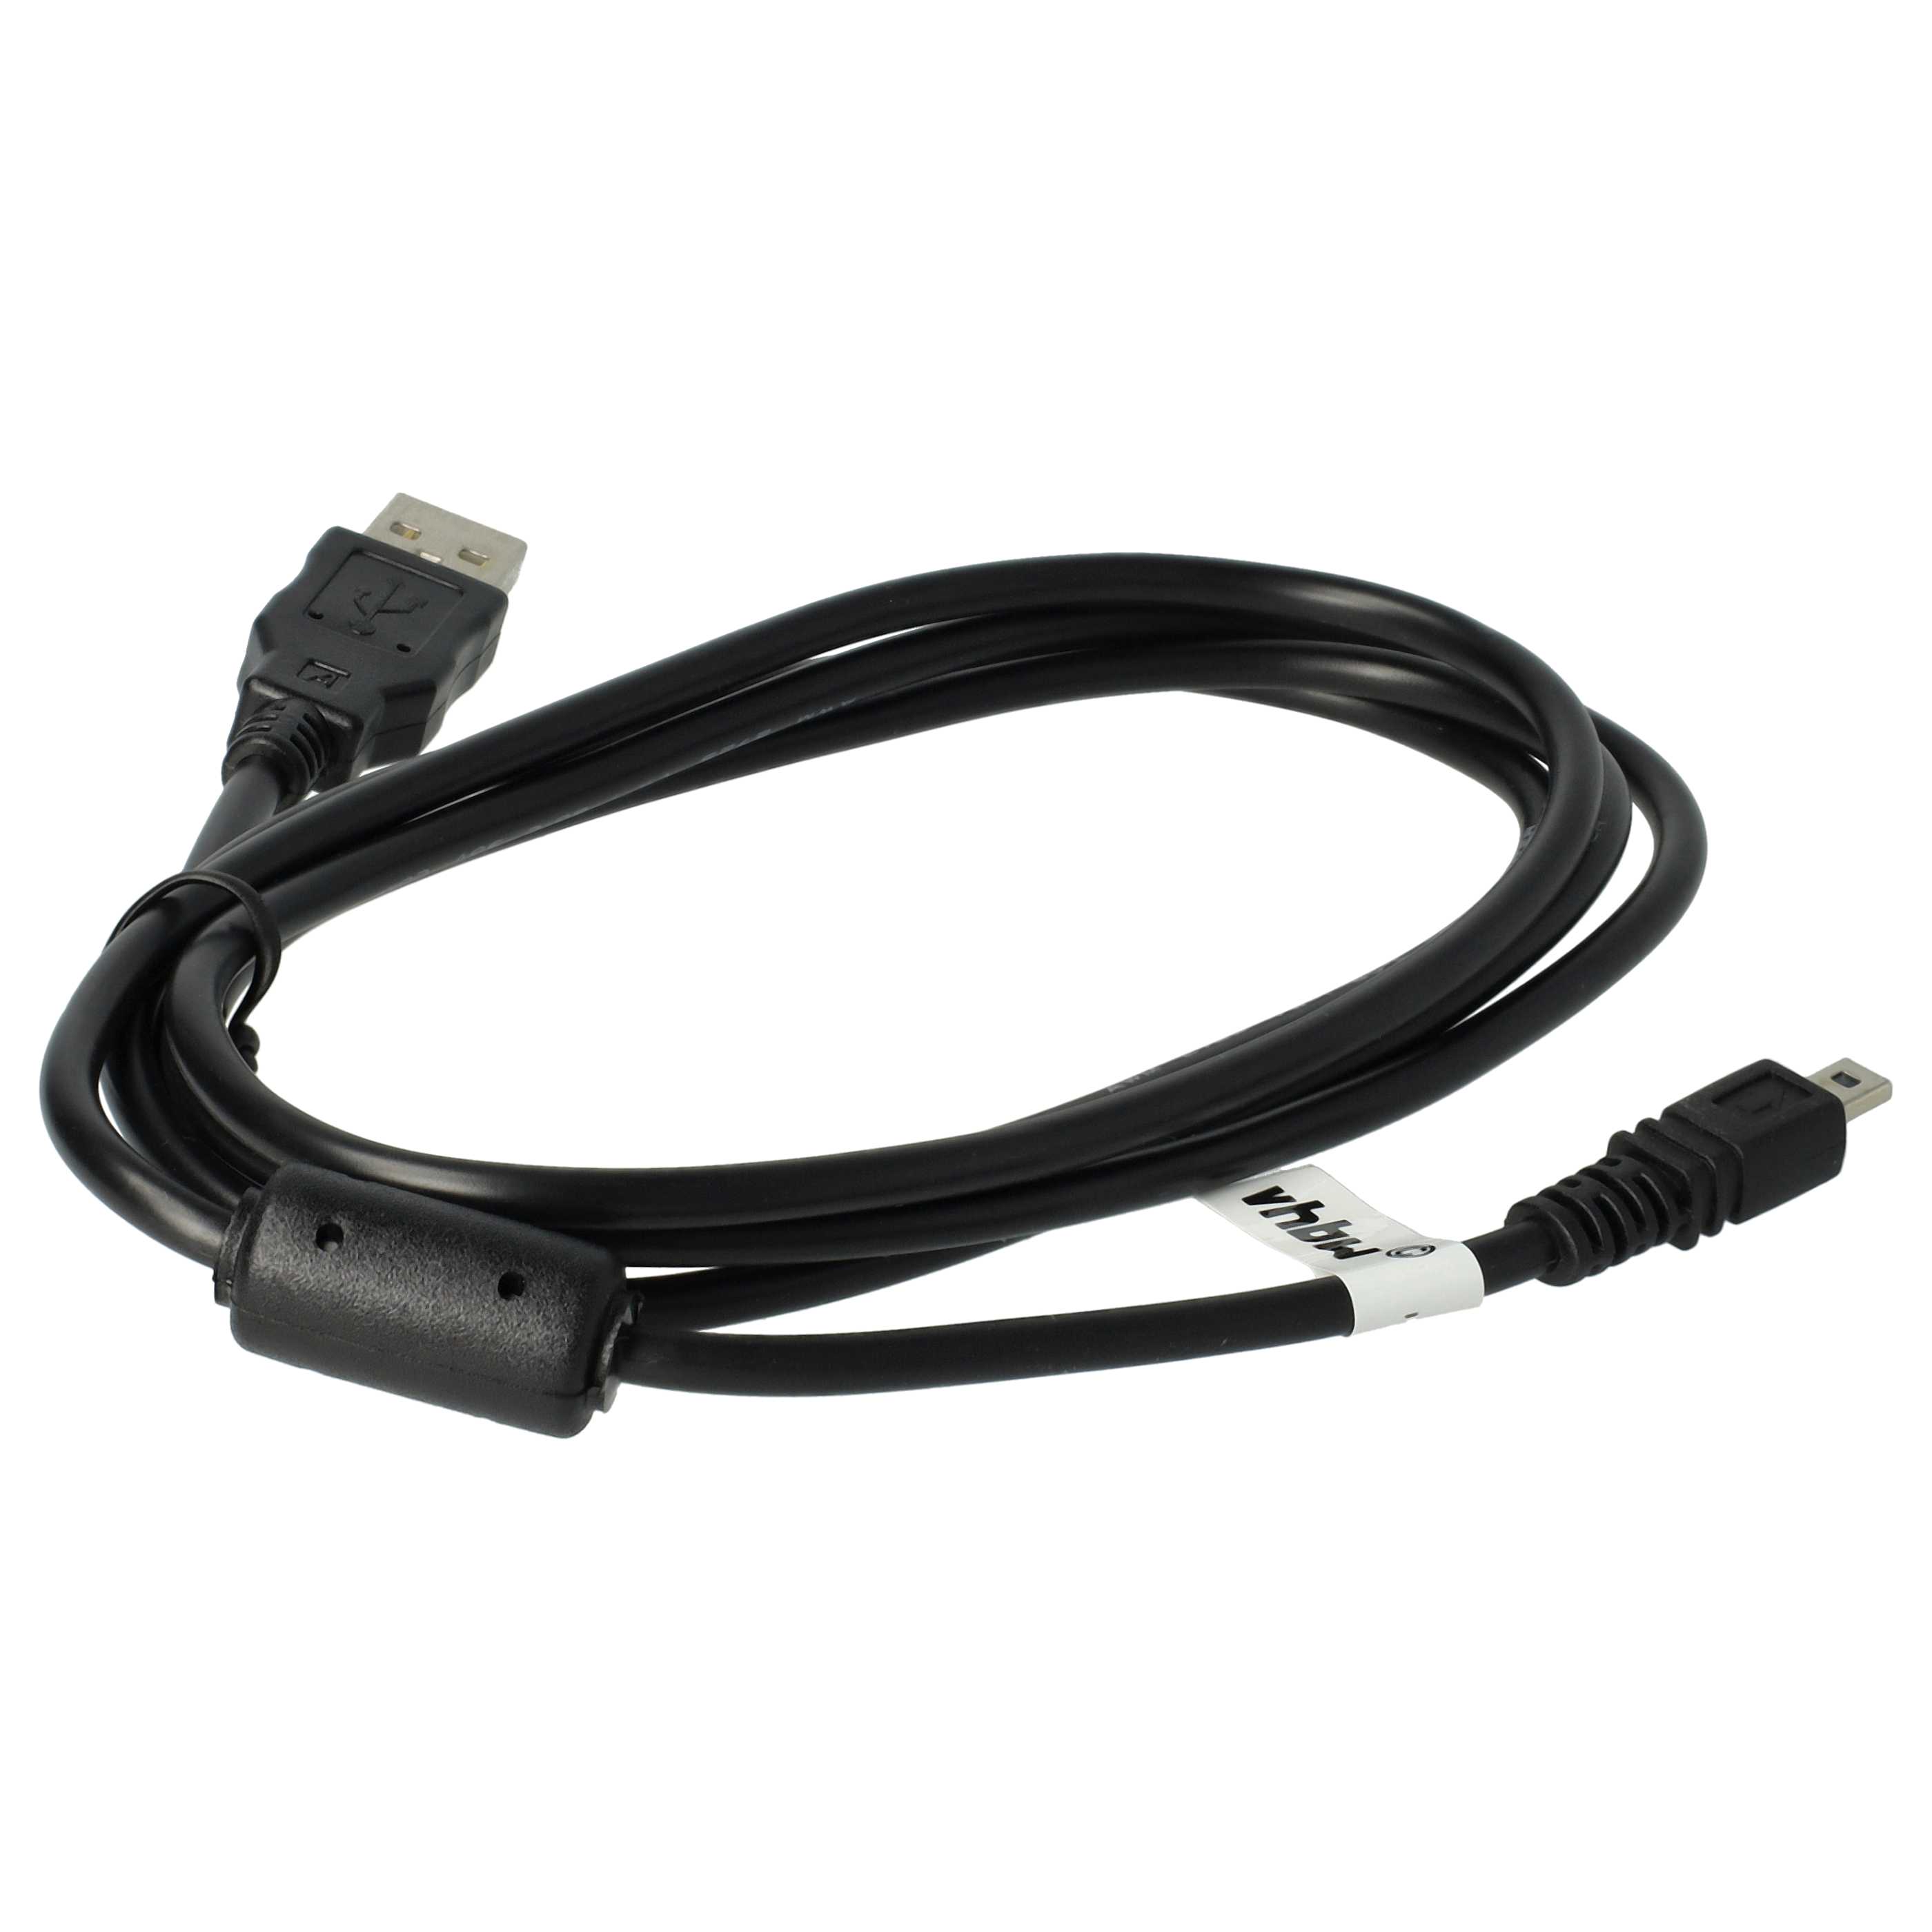 USB Data Cable replaces Casio EMC-5U for Pentax Camera etc. - 150 cm